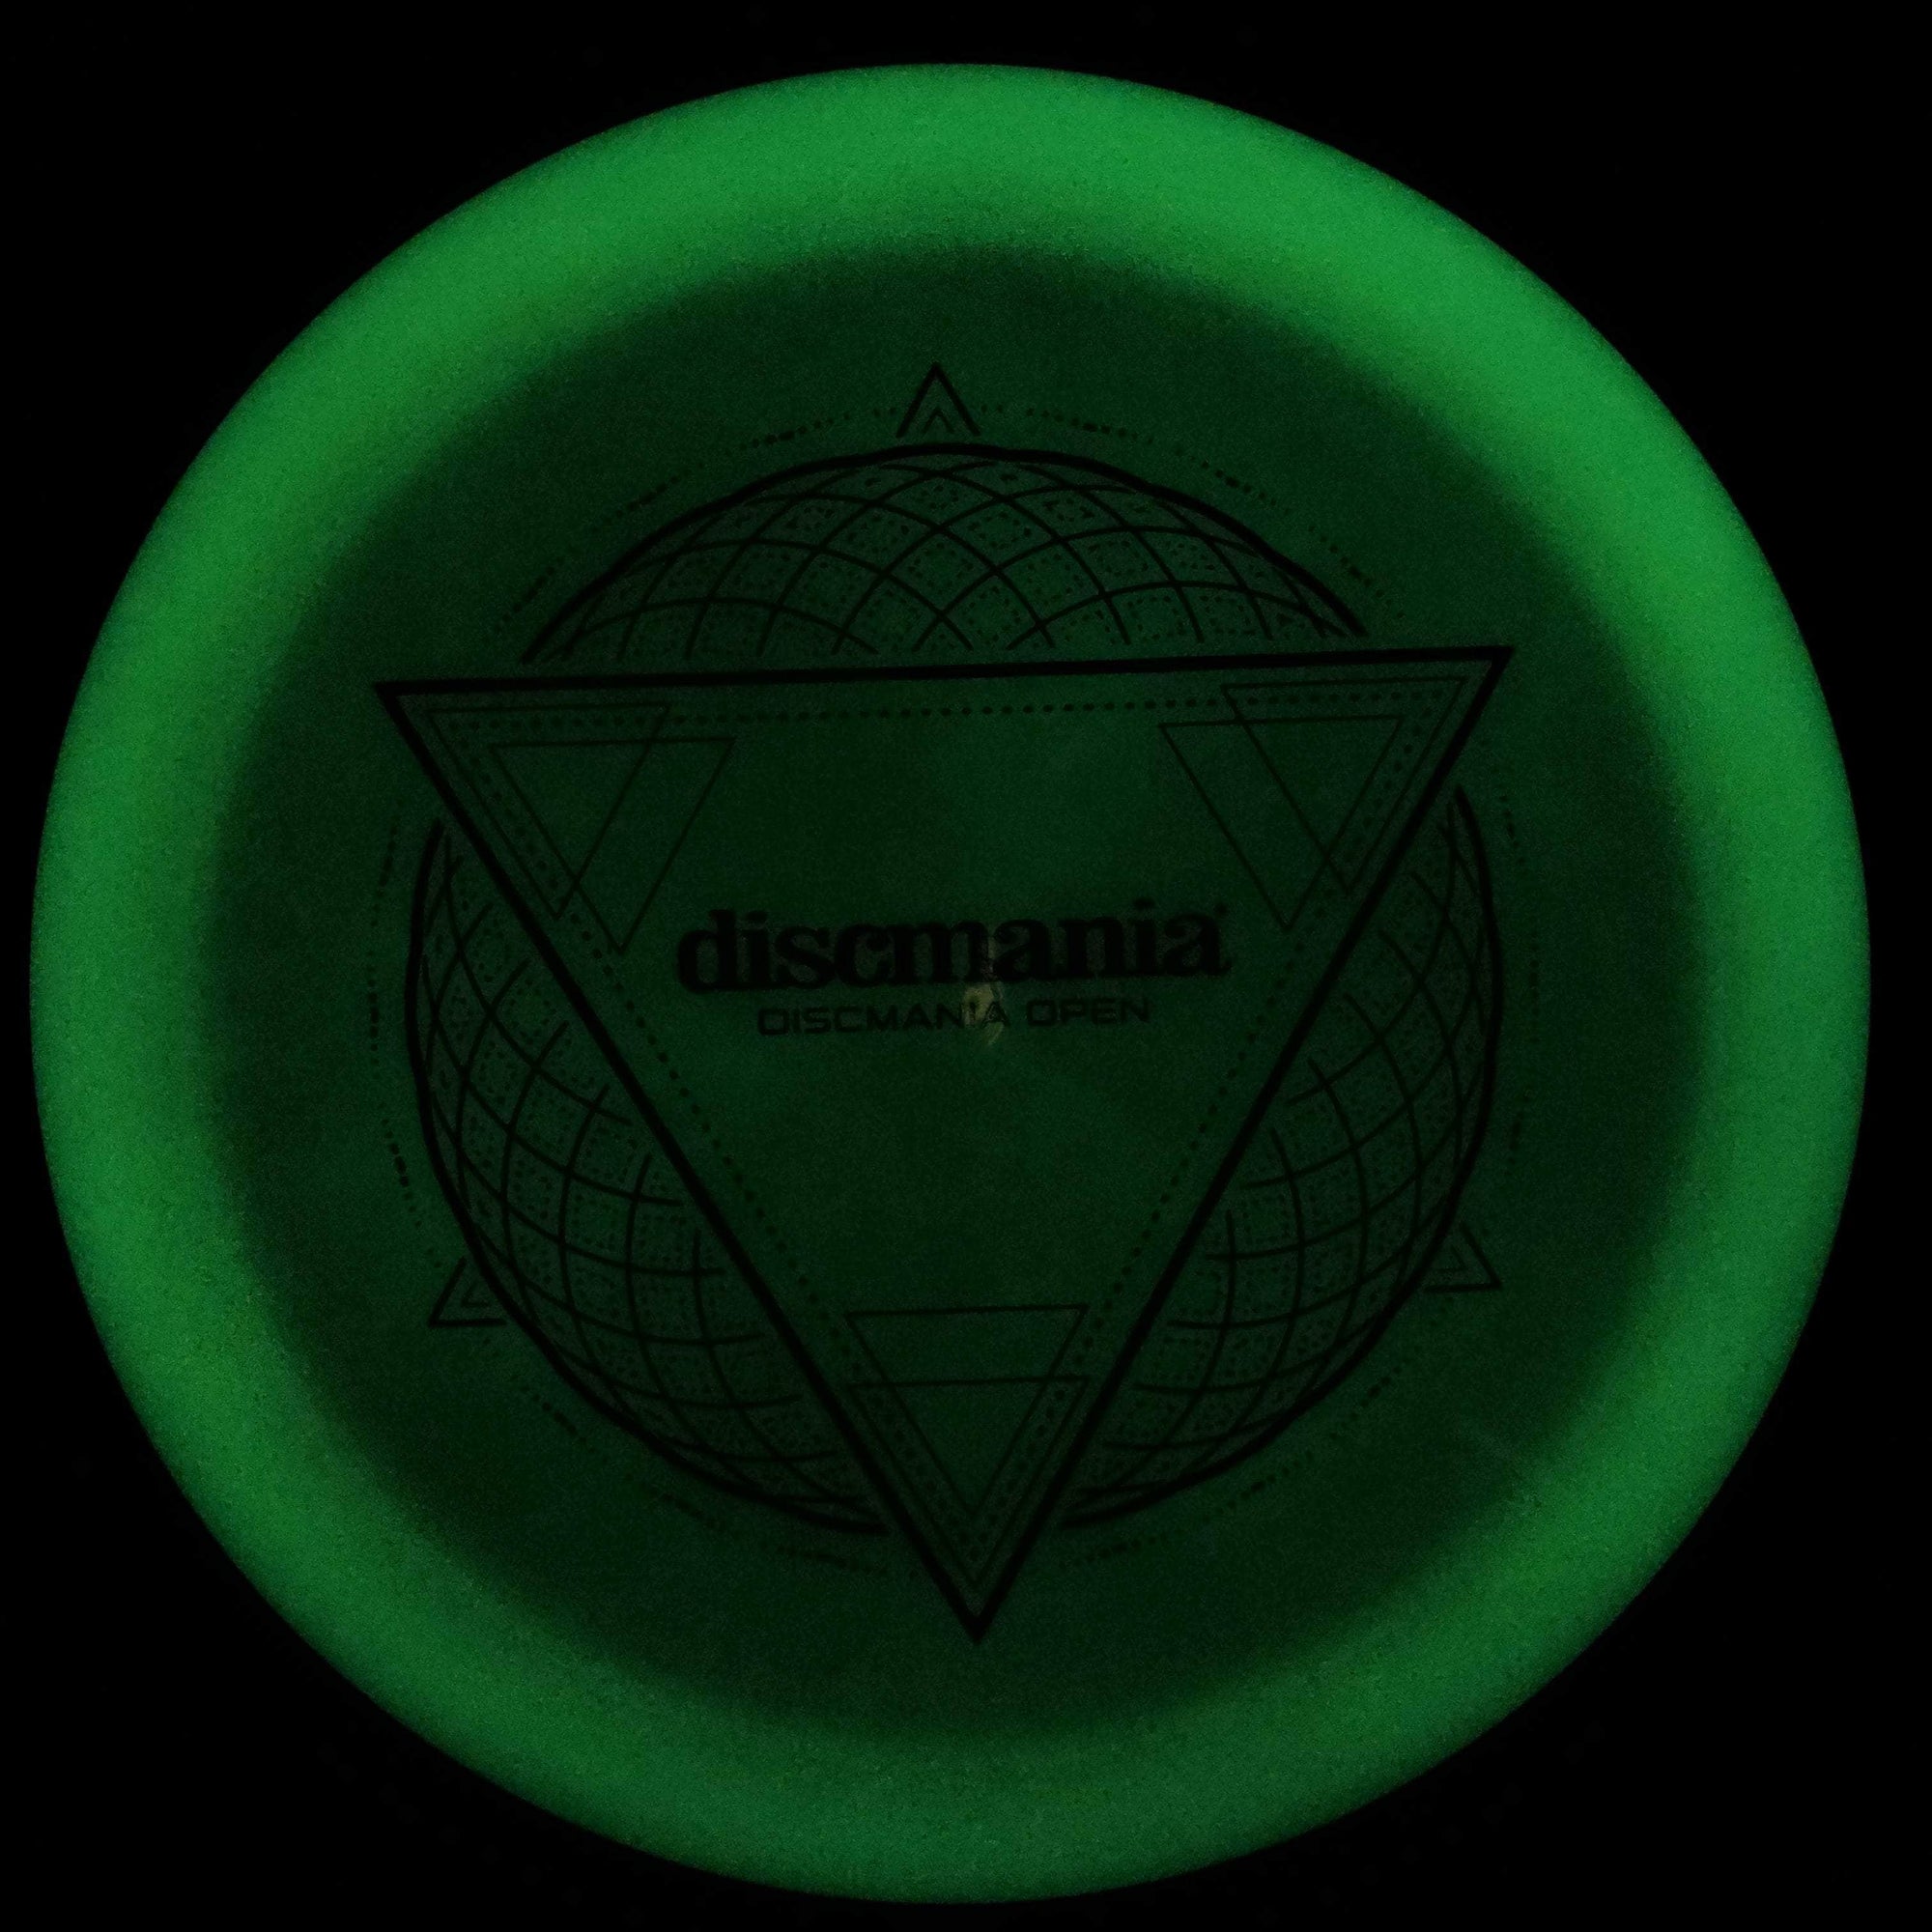 Discmania Distance Driver Enigma, Lumen Plastic, Discmania Open